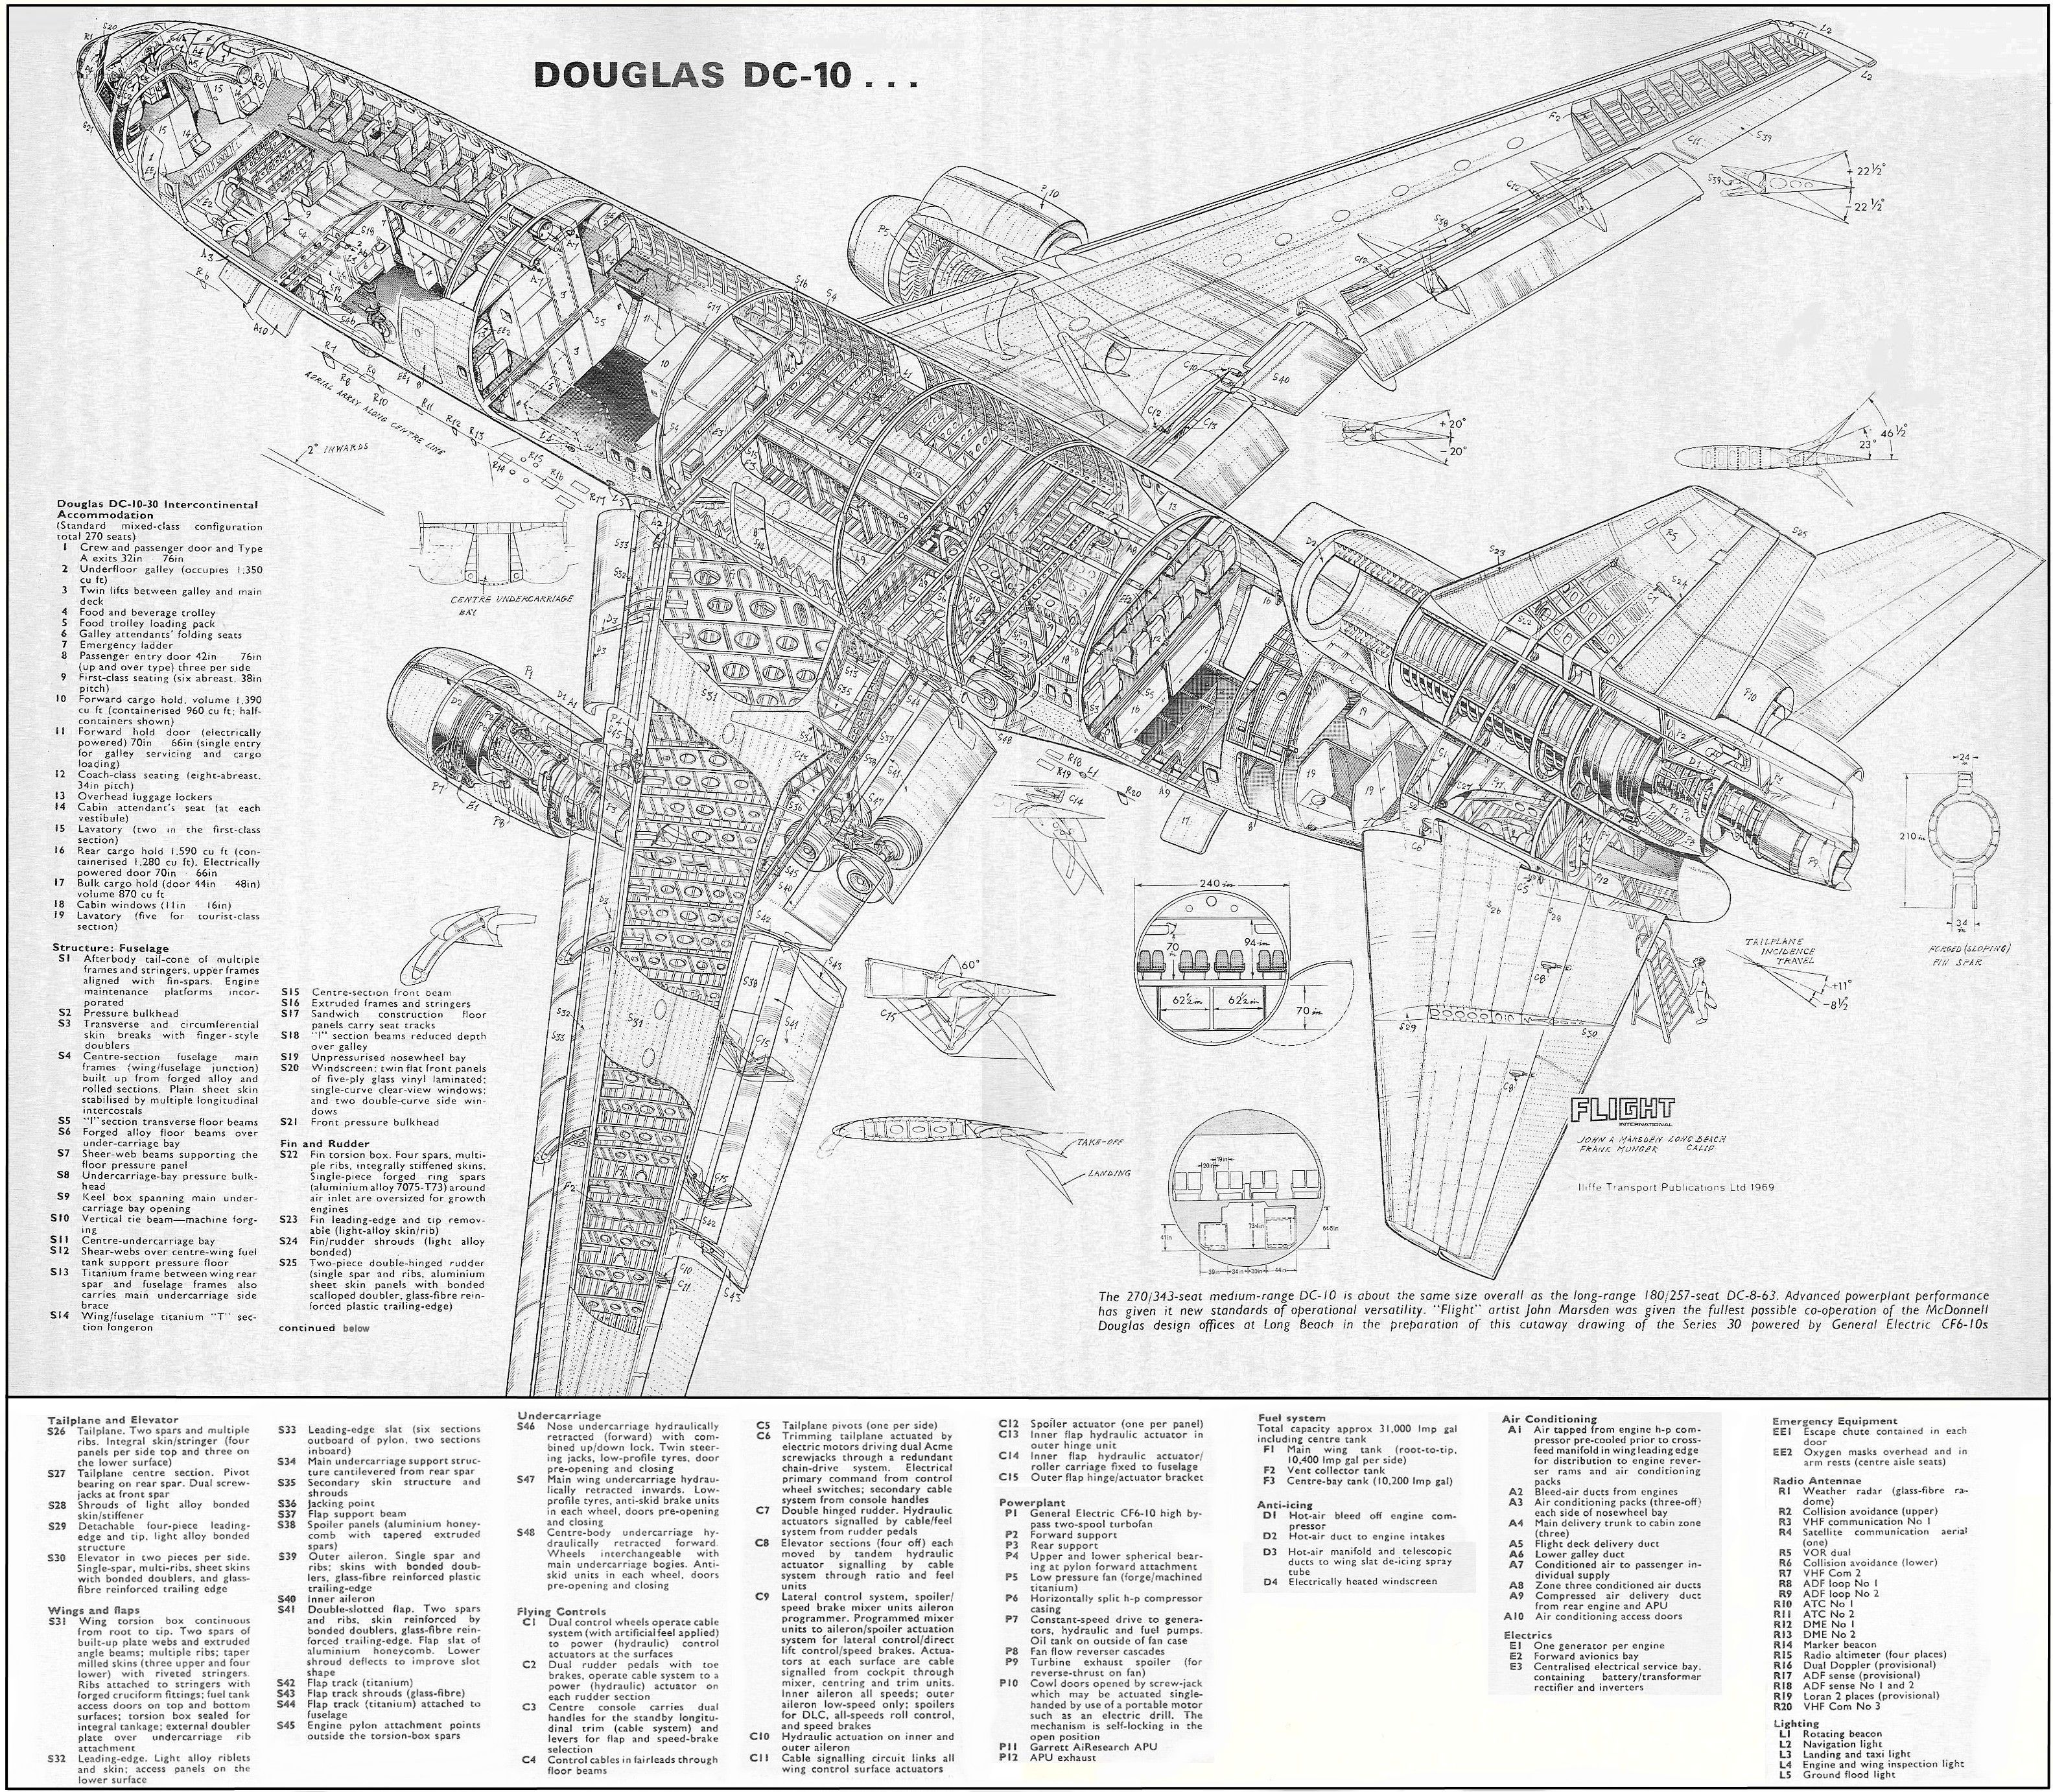 mcdacdc101 | Aircraft of World War II - WW2Aircraft.net Forums